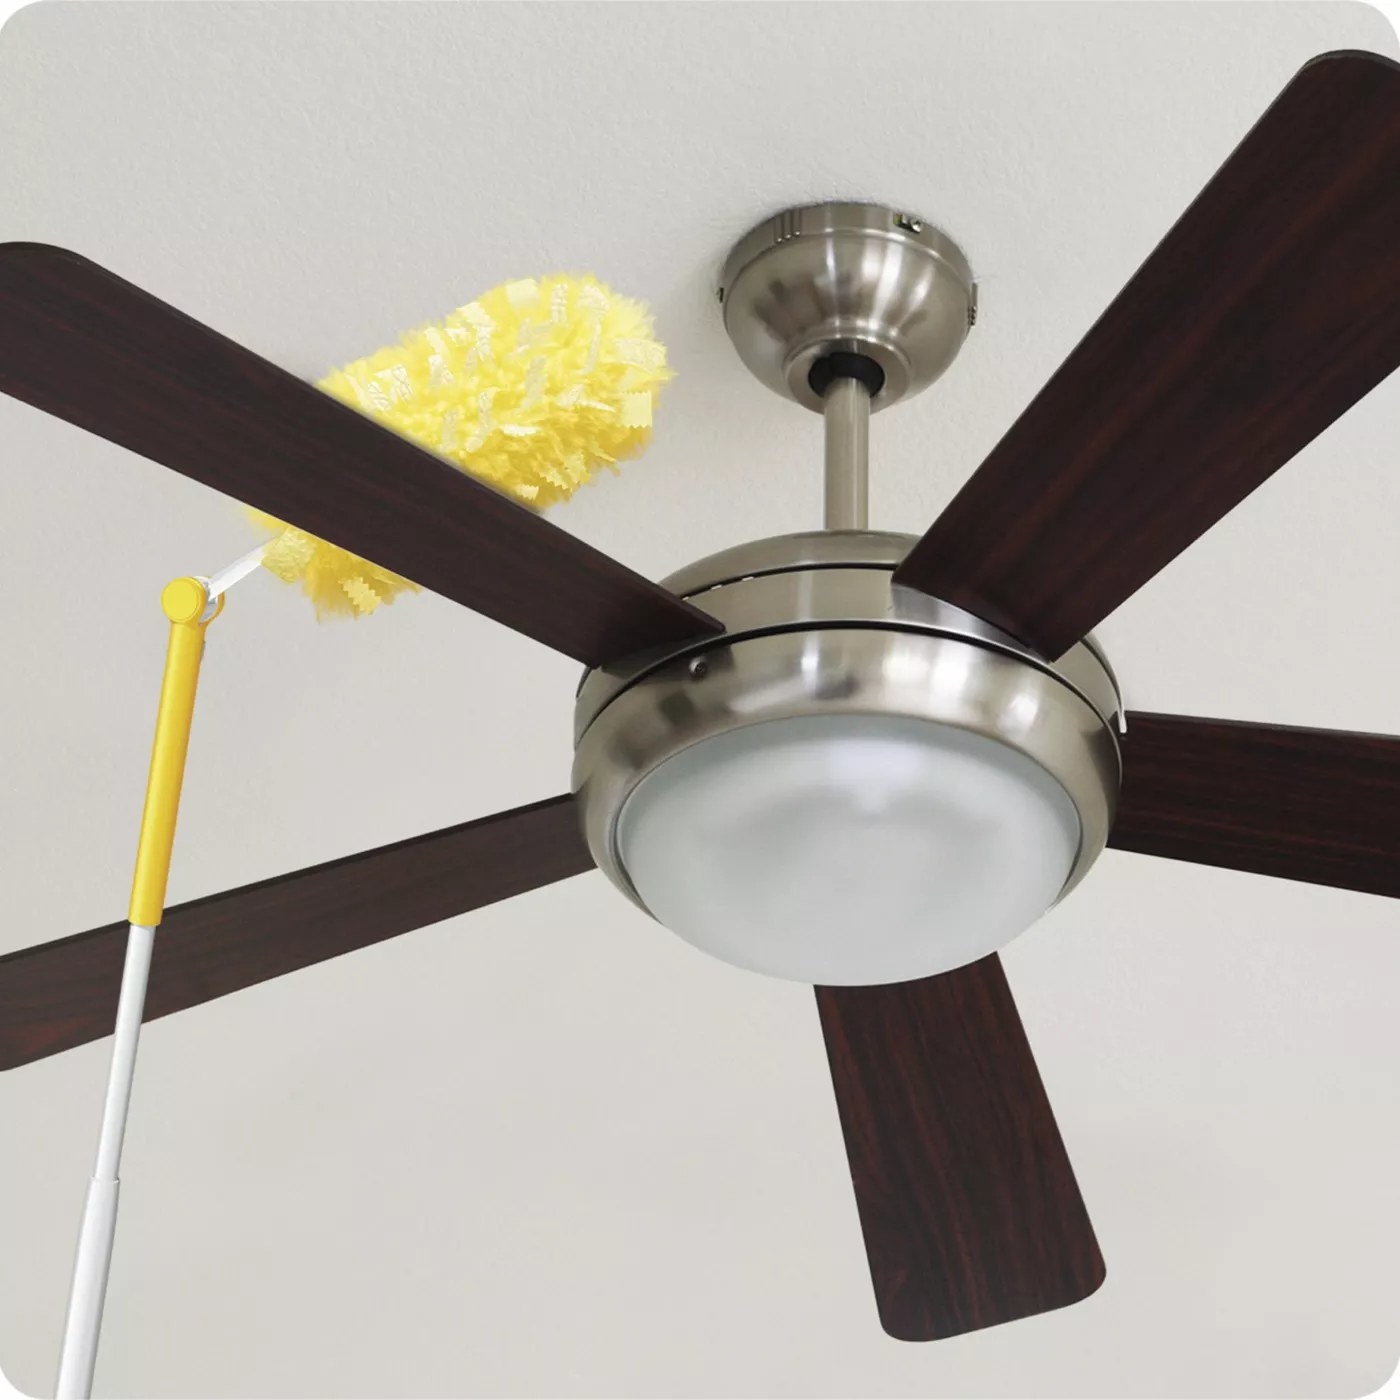 The Swiffer dusting a ceiling fan